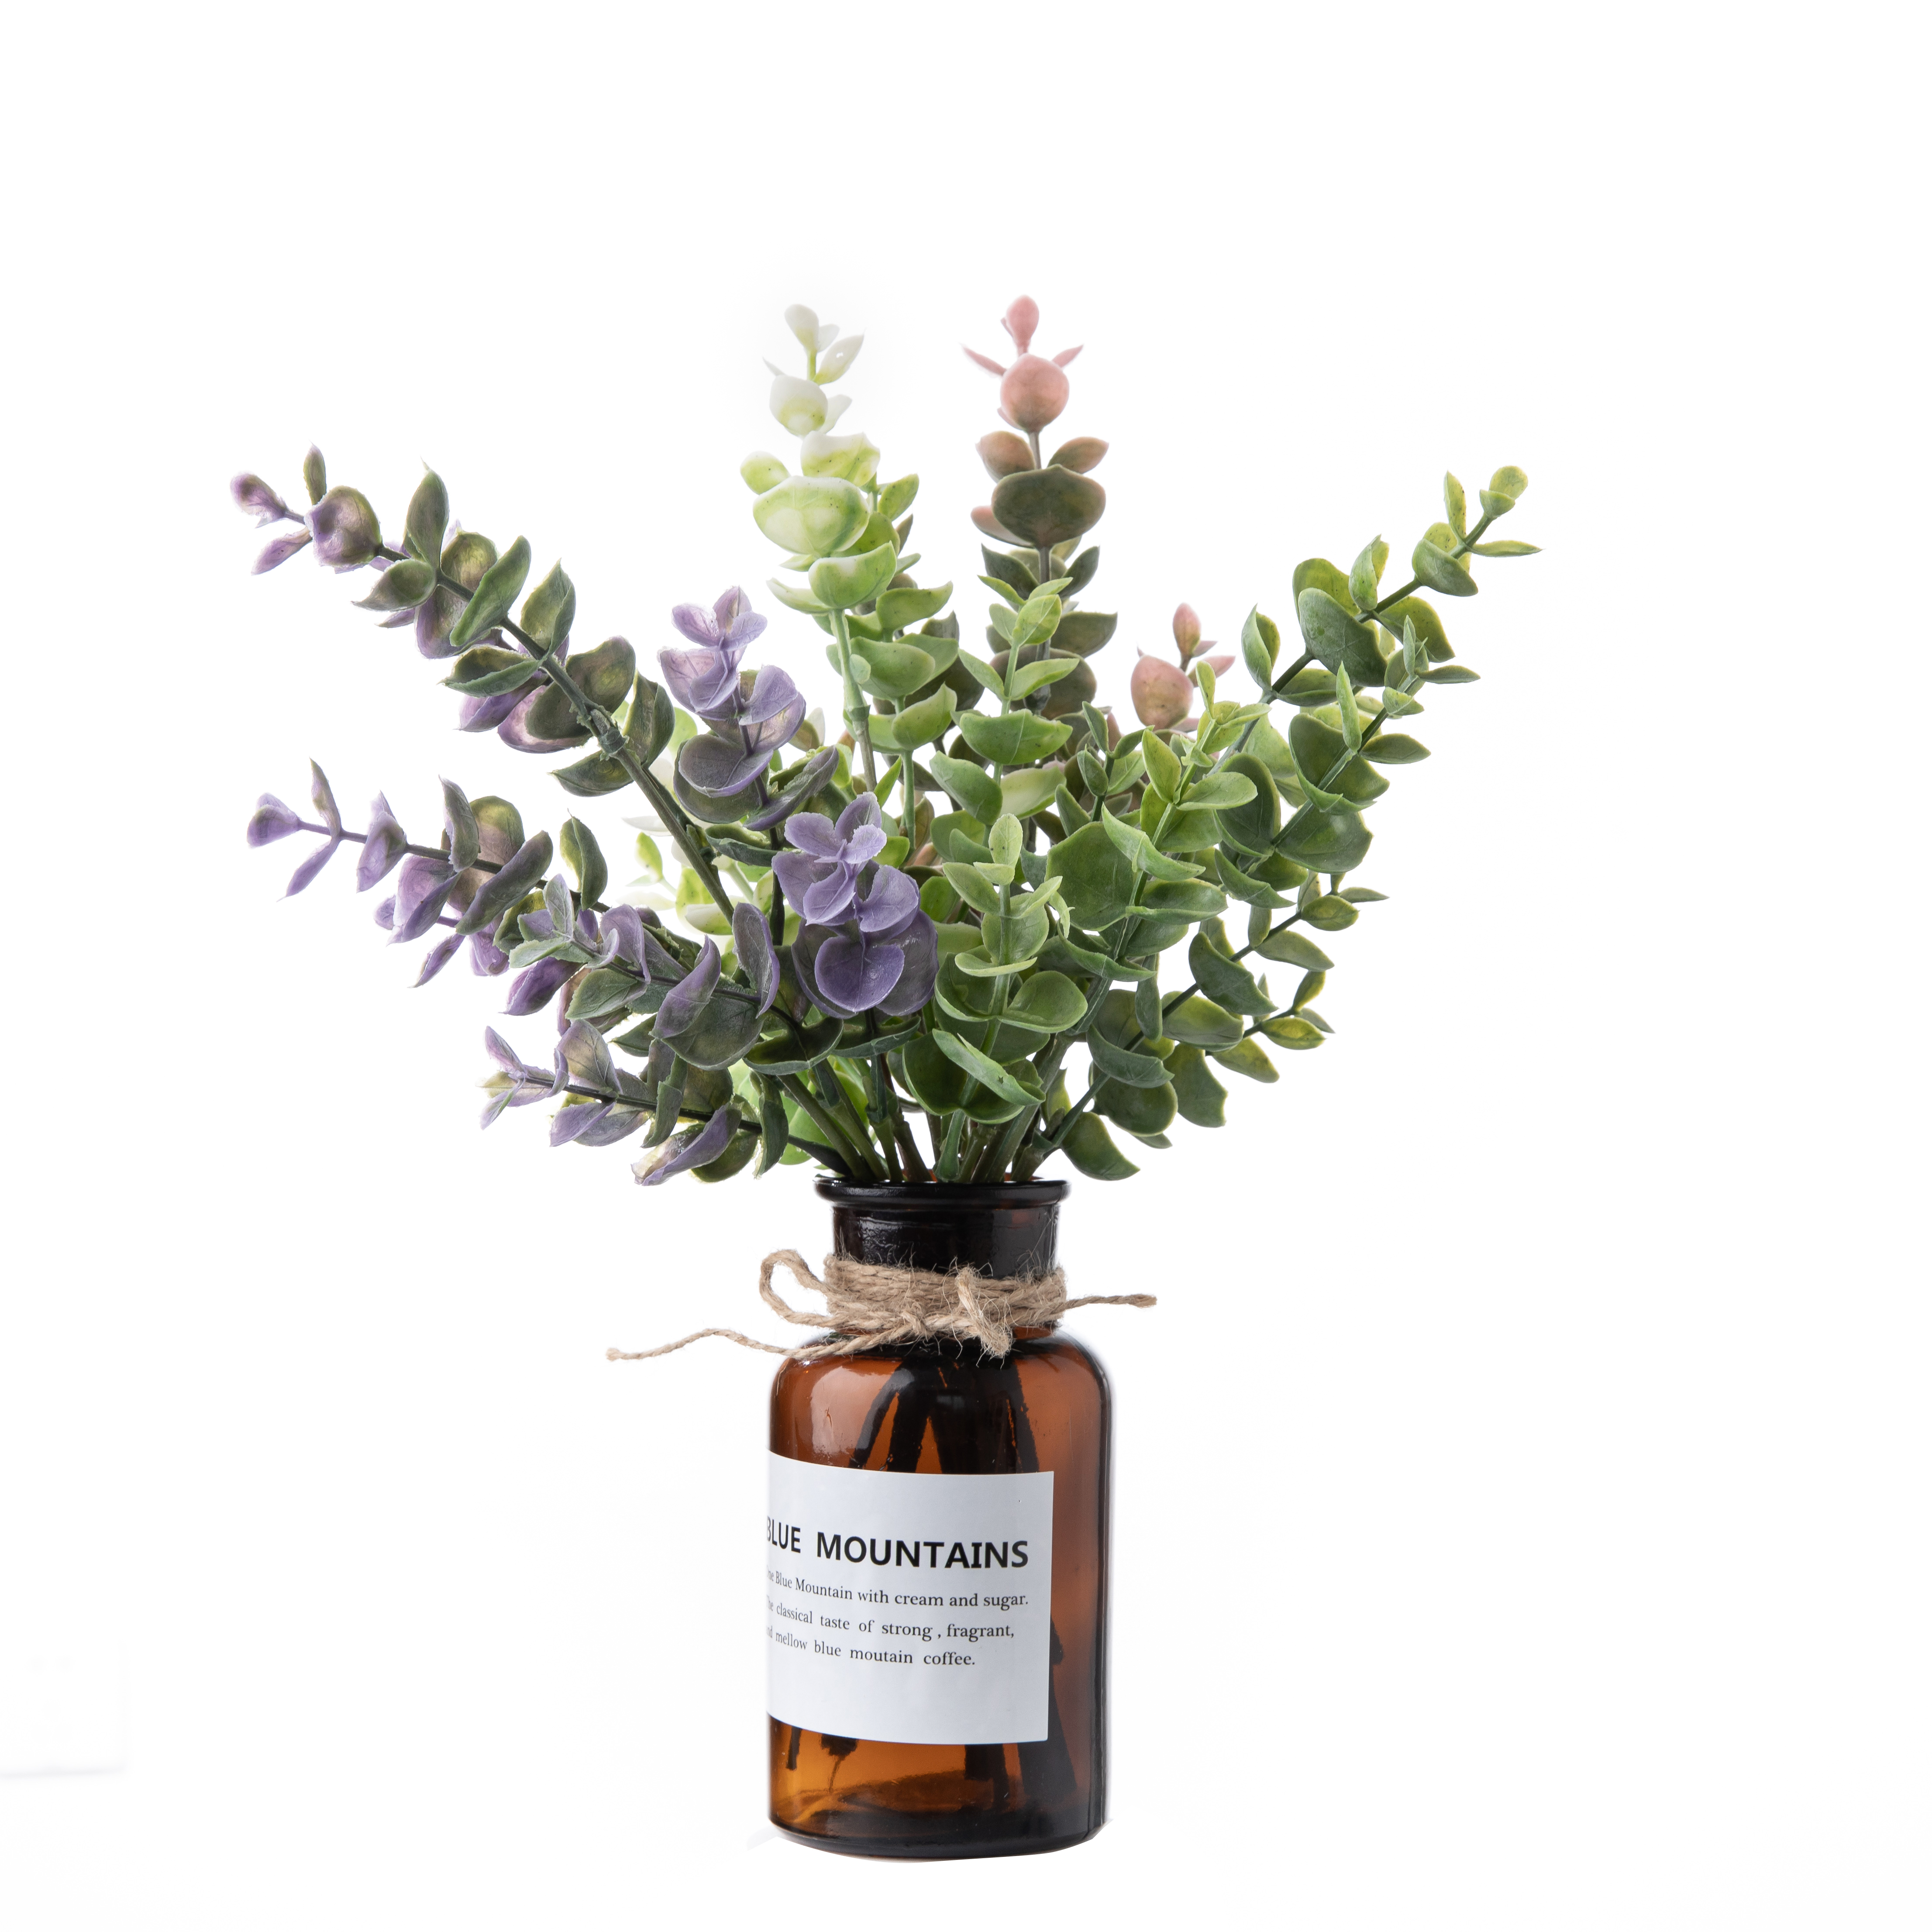 DY1-6079 Artificial Flower Plant Eucalyptus Hege kwaliteit dekorative blommen en planten